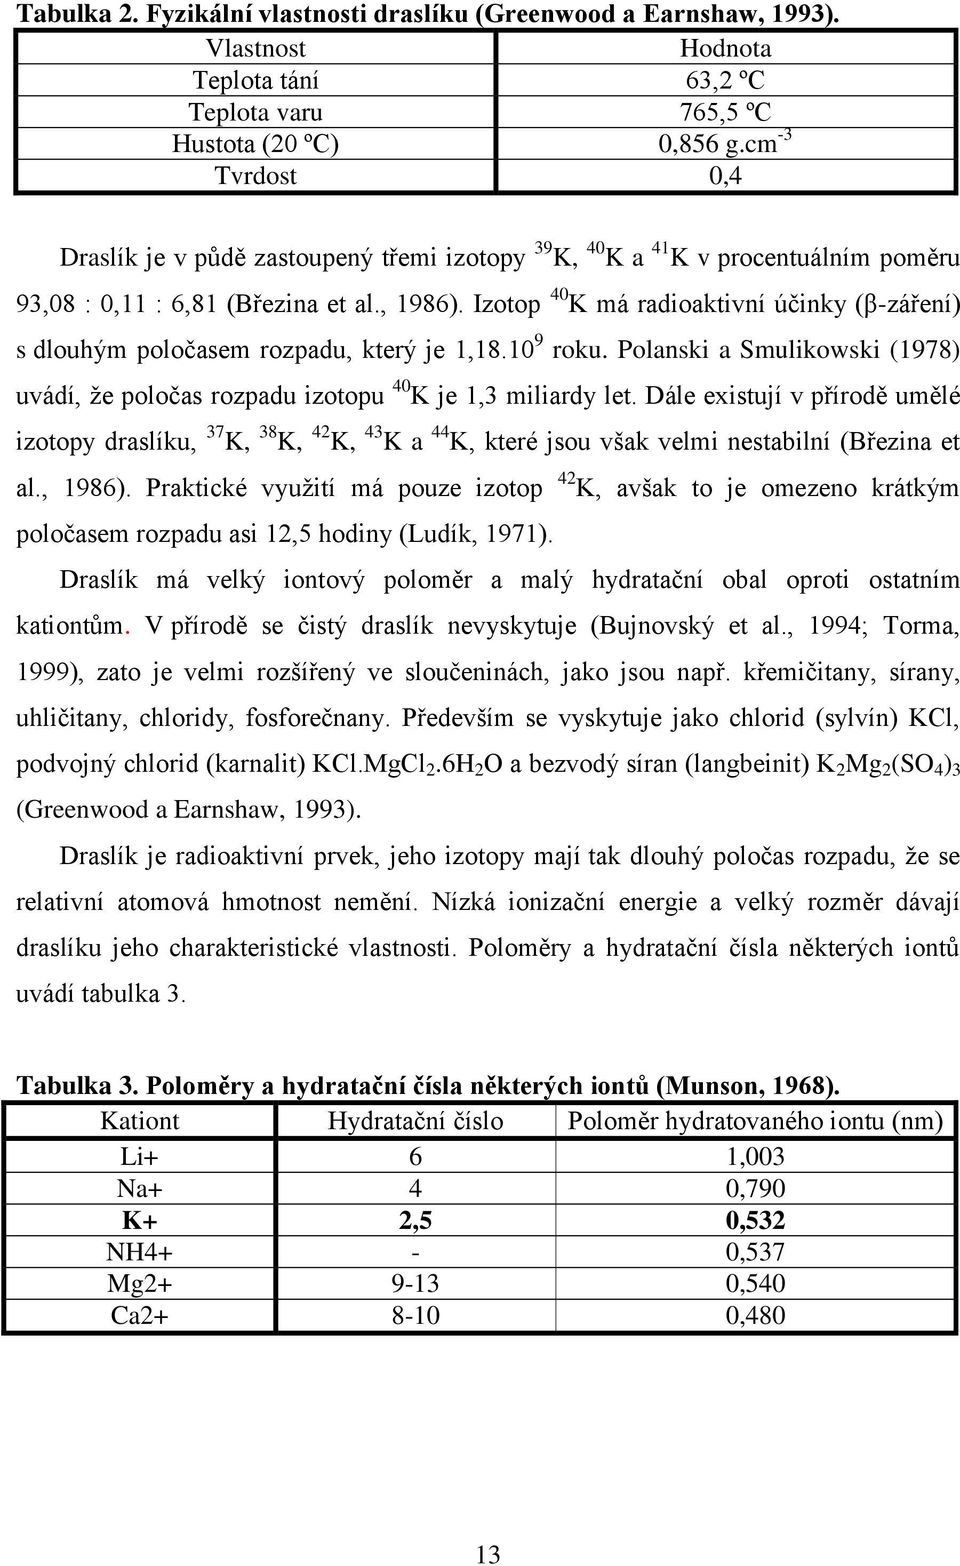 Izotop 40 K má radioaktivní účinky (β-záření) s dlouhým poločasem rozpadu, který je 1,18.10 9 roku. Polanski a Smulikowski (1978) uvádí, že poločas rozpadu izotopu 40 K je 1,3 miliardy let.